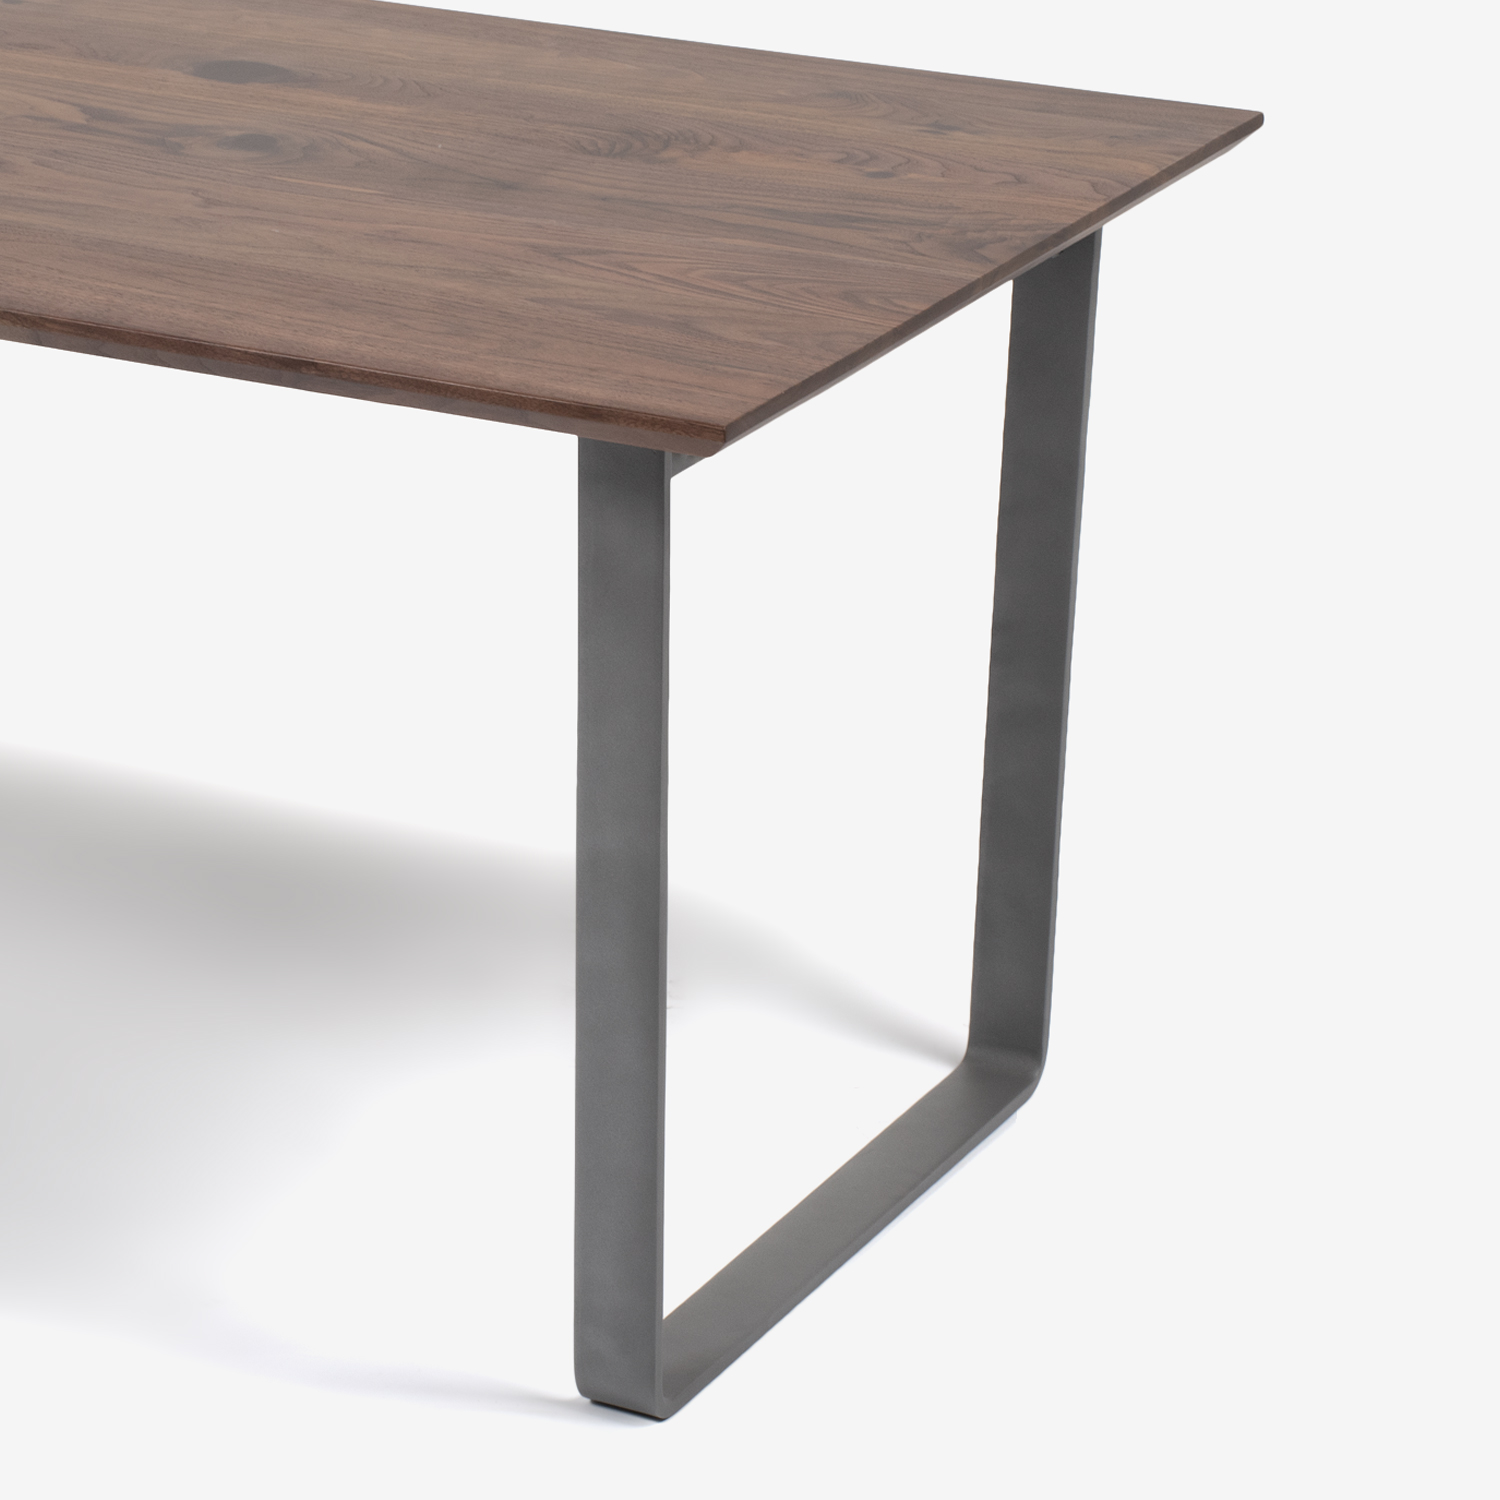 ダイニングテーブル「フィル3」ウォールナット材 金属脚シルバー 天板2タイプ（角型・角丸型）全4サイズ